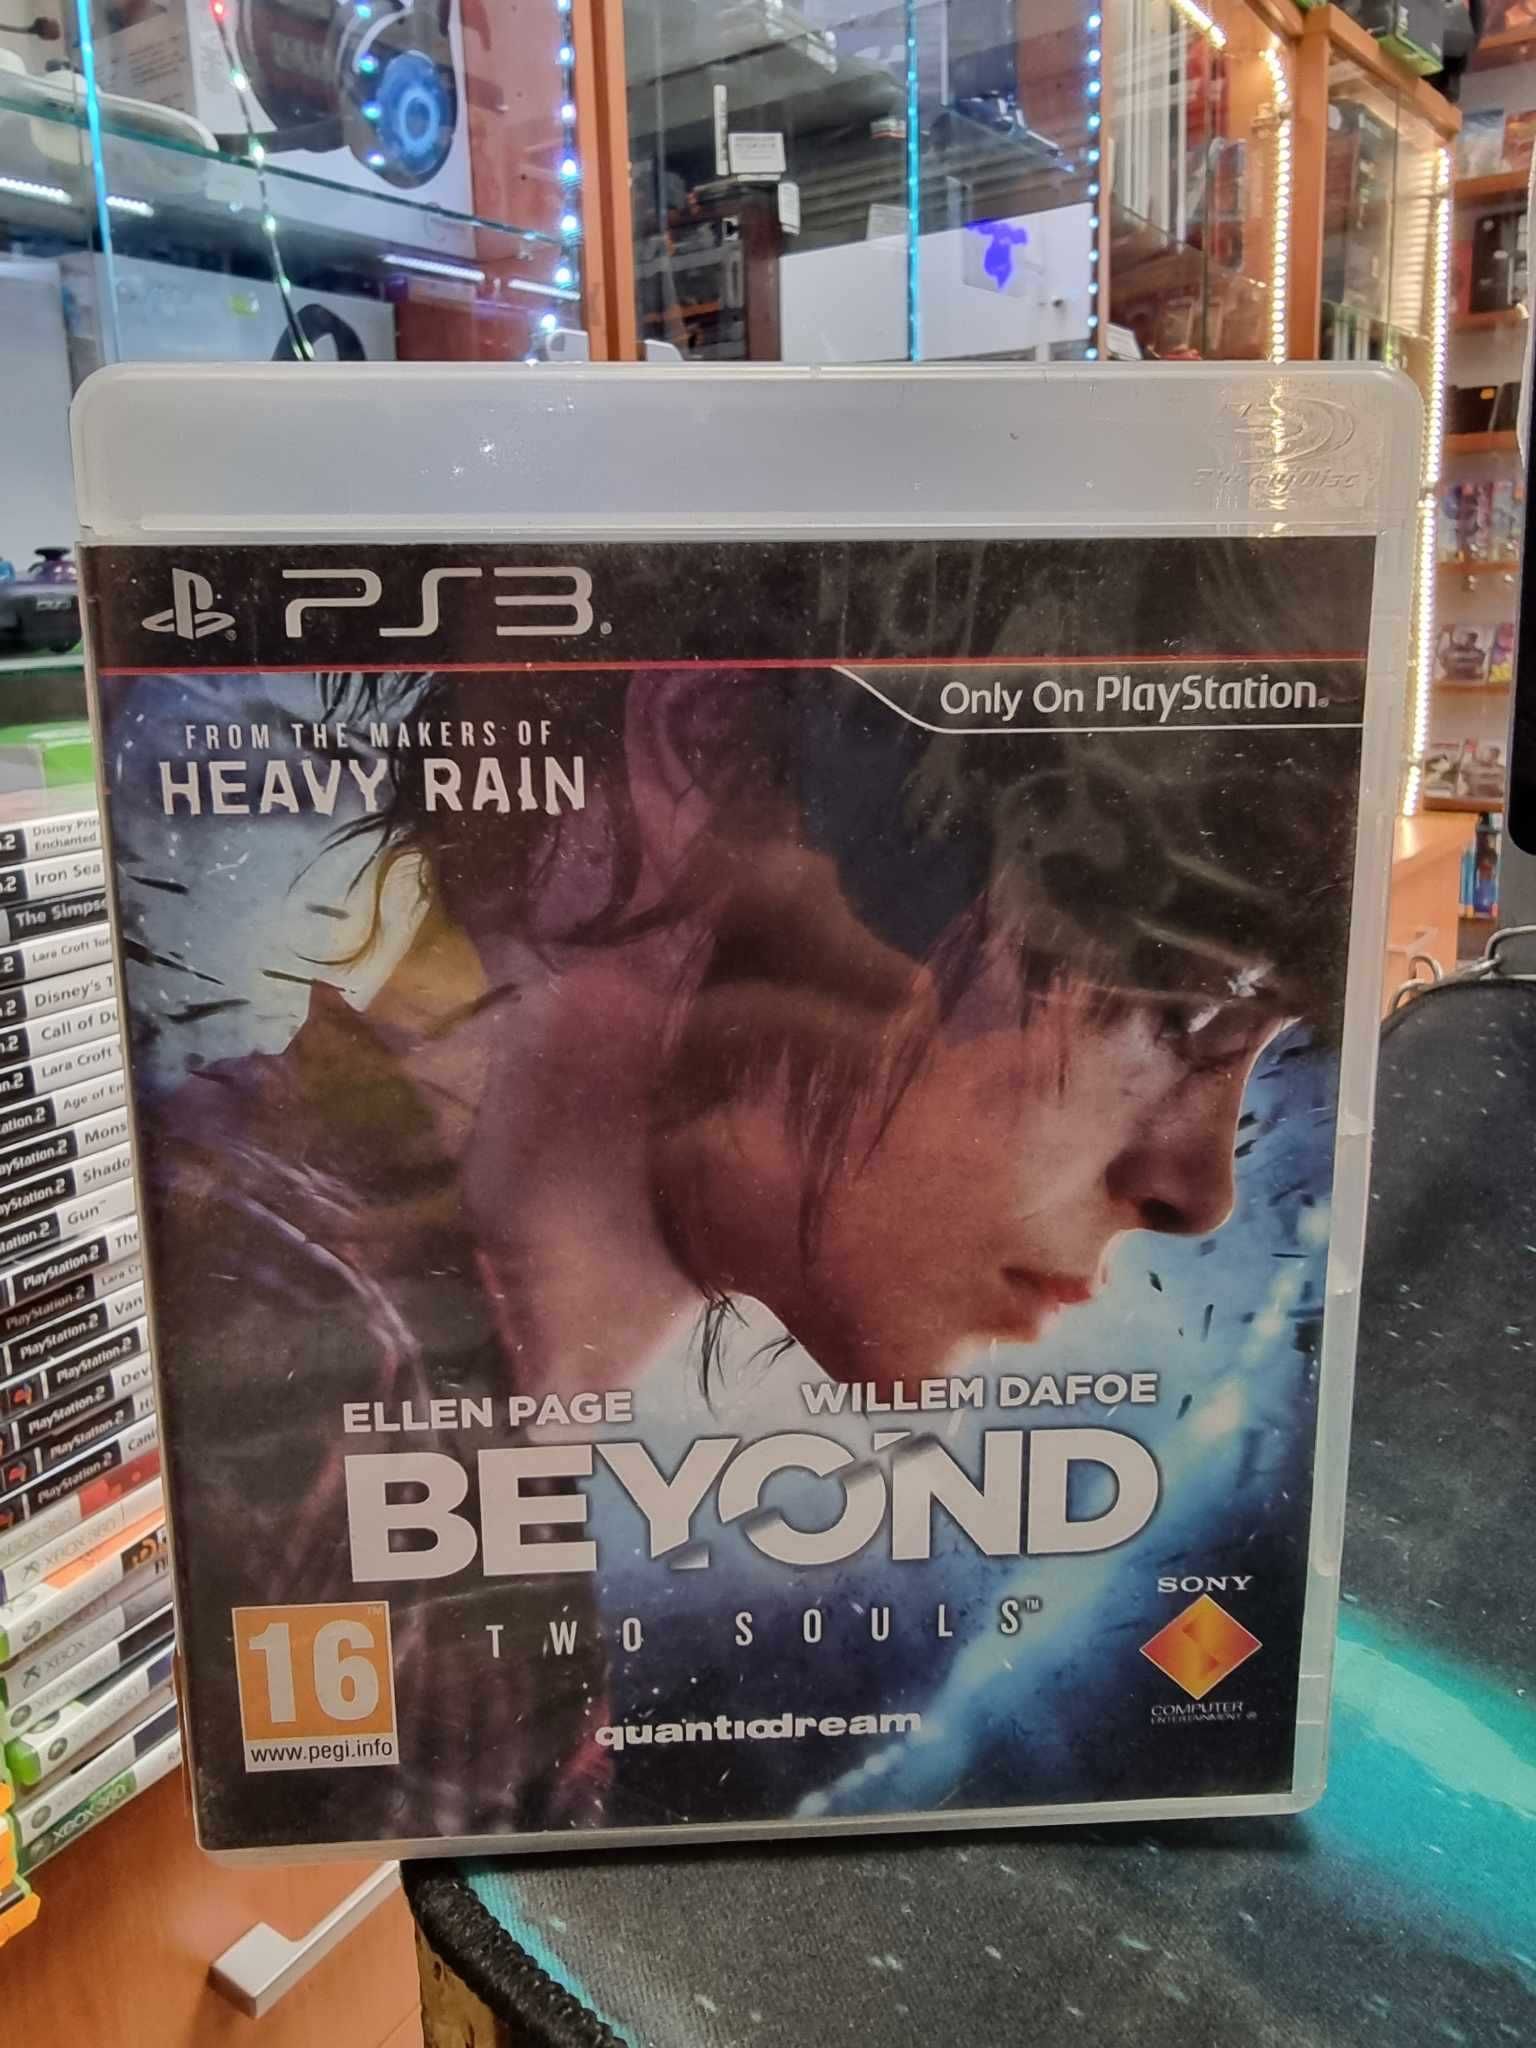 Beyond: Dwie dusze PS3 Sklep Wysyłka Wymiana